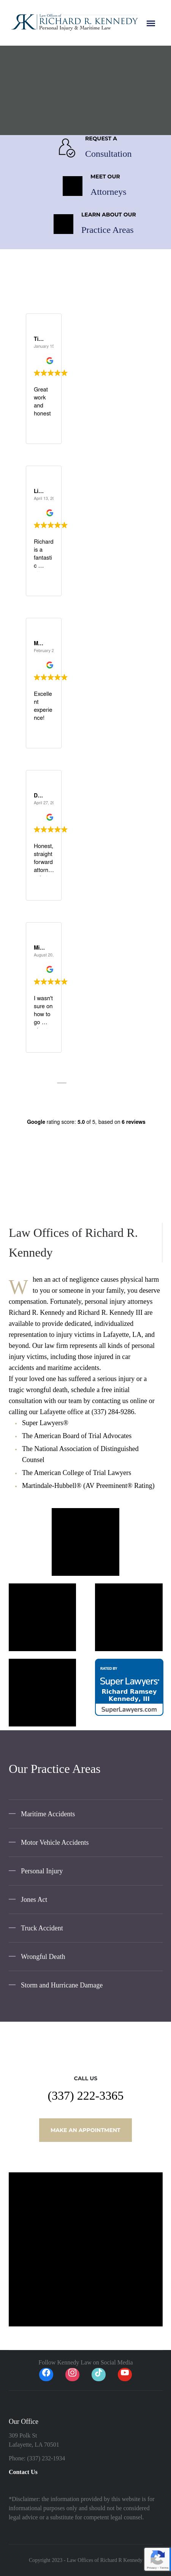 Kennedy, Richard R Law Offices Of - Lafayette LA Lawyers